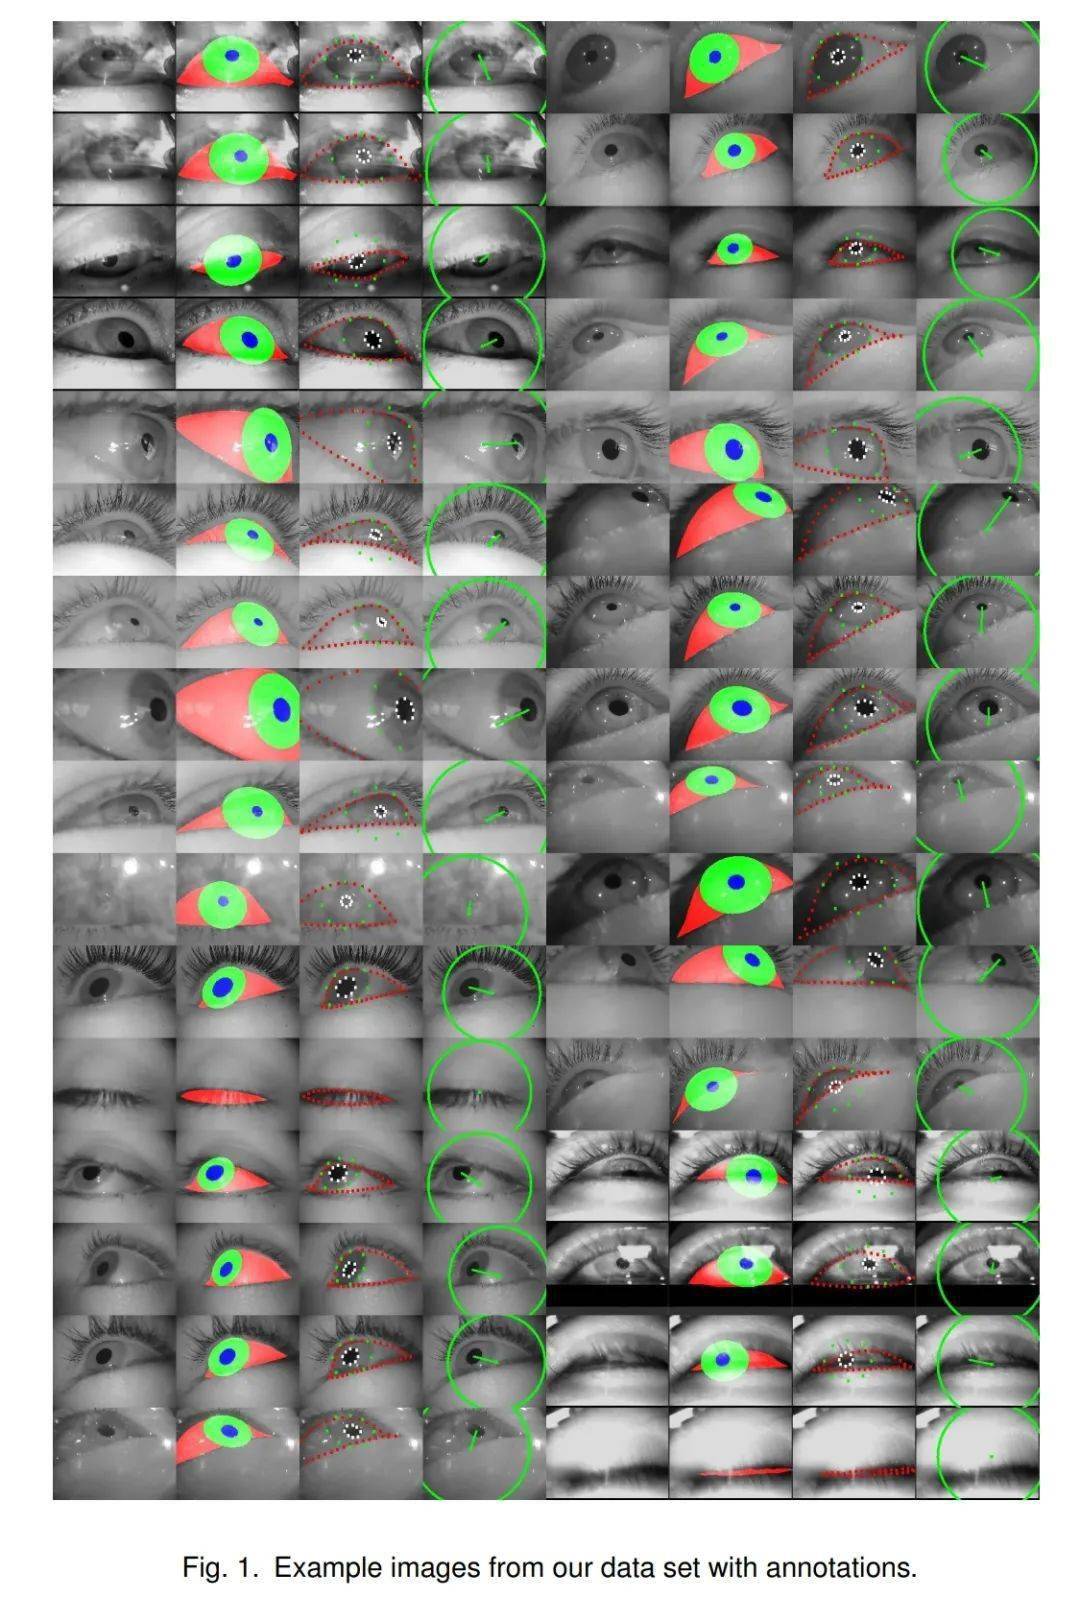 2020-02-26-如何学习眼动技术_机器学习 眼动分析-CSDN博客